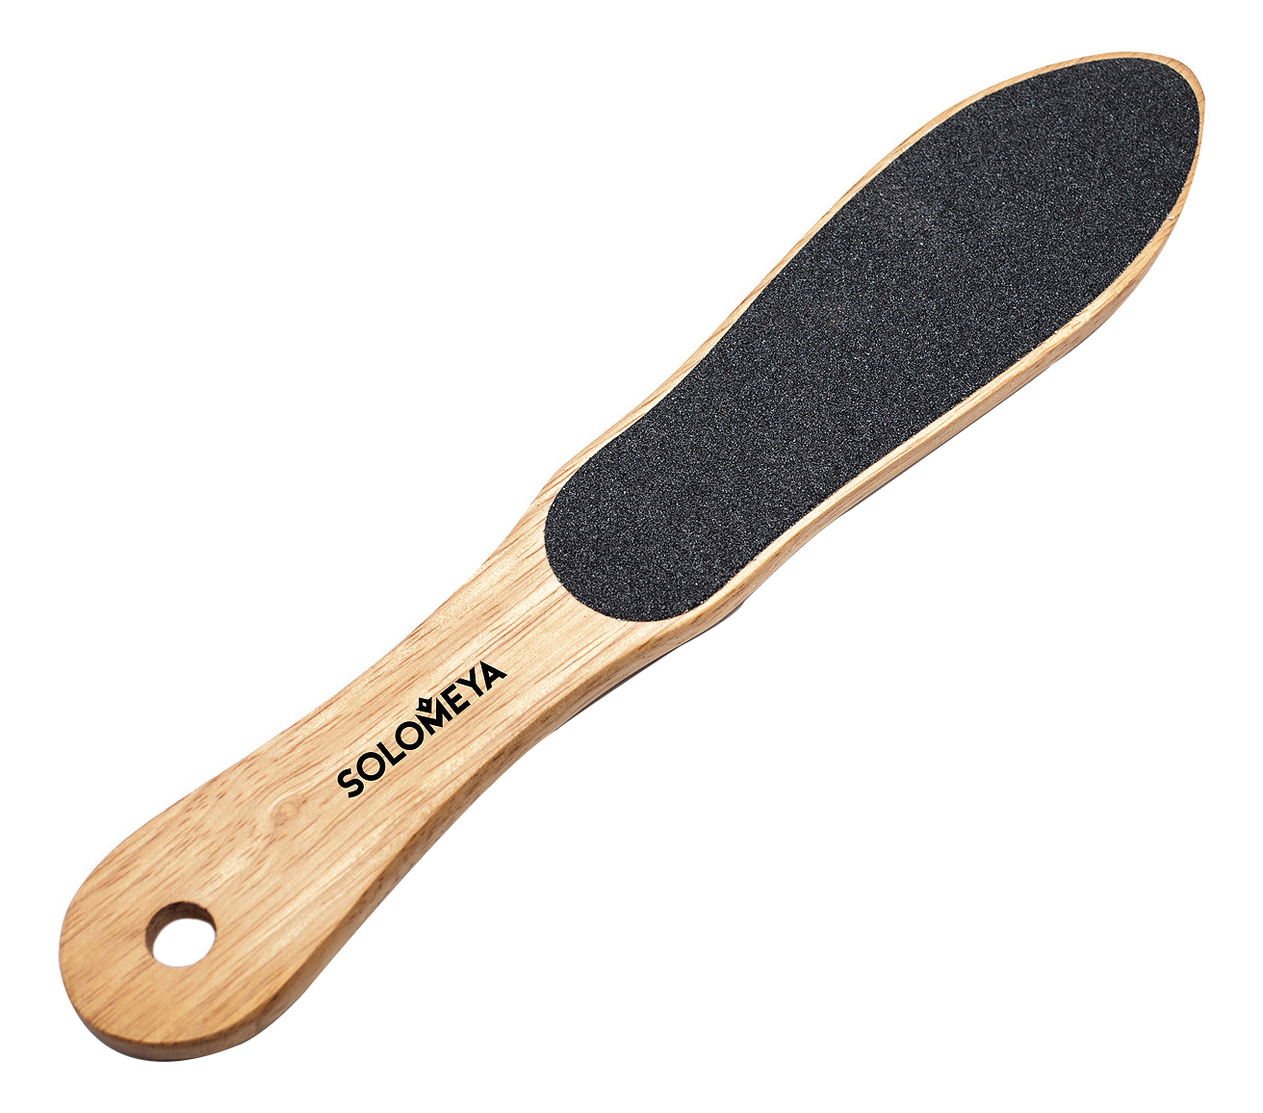 Профессиональная деревянная пилка для педикюра Professional Wooden Foot File Foot Shape от Randewoo